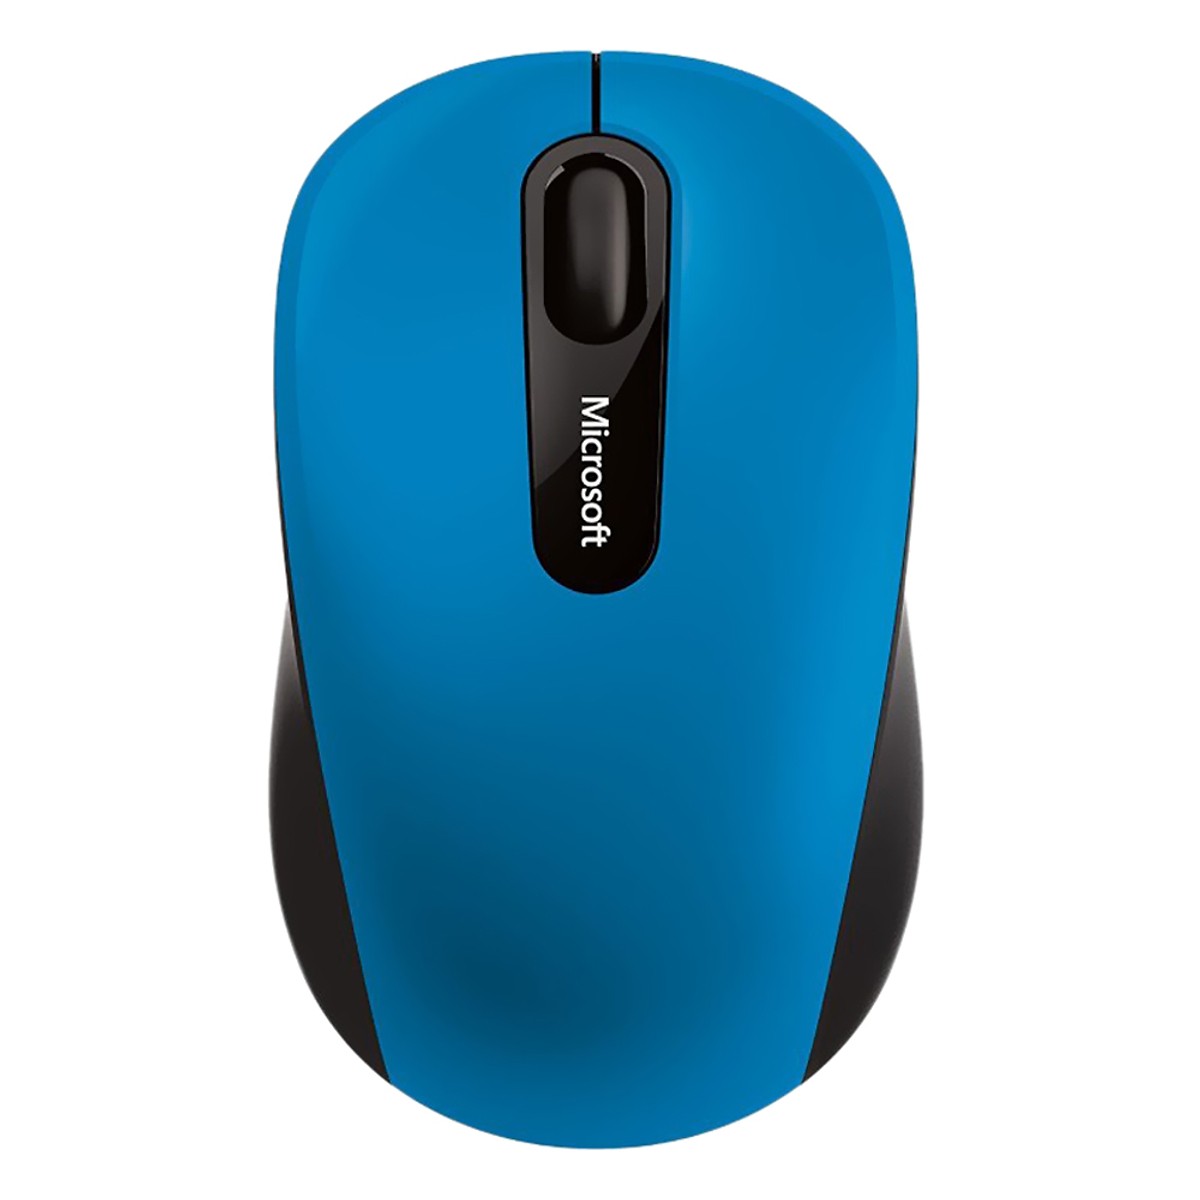 Chuột không dây Bluetooth Microsoft 3600 (Màu xanh)